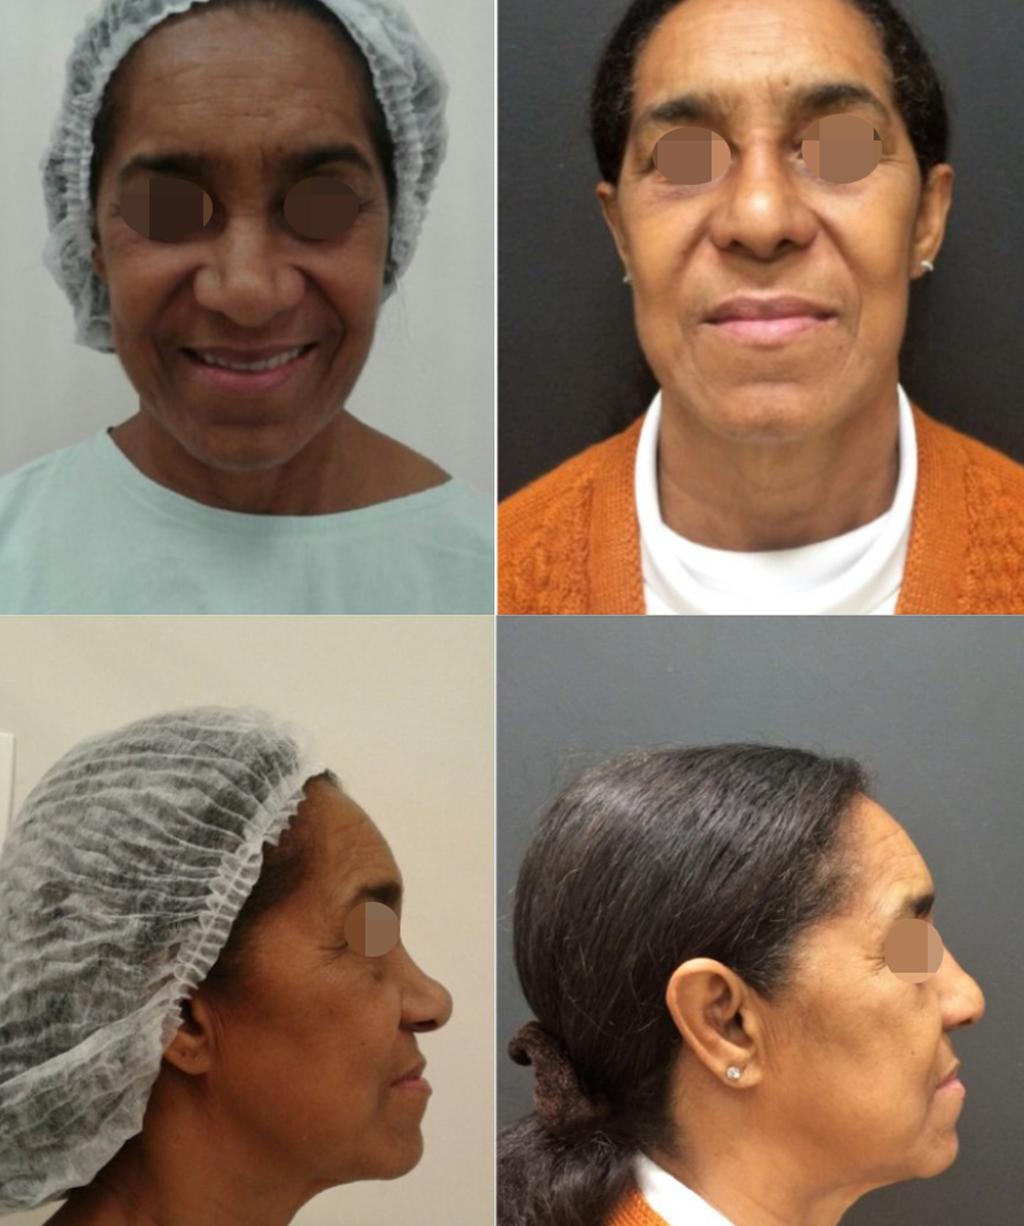 sensibilidade auricular. Os nove pacientes apresentaram-se satisfeitos (3) ou felizes (6) com o procedimento nasal.